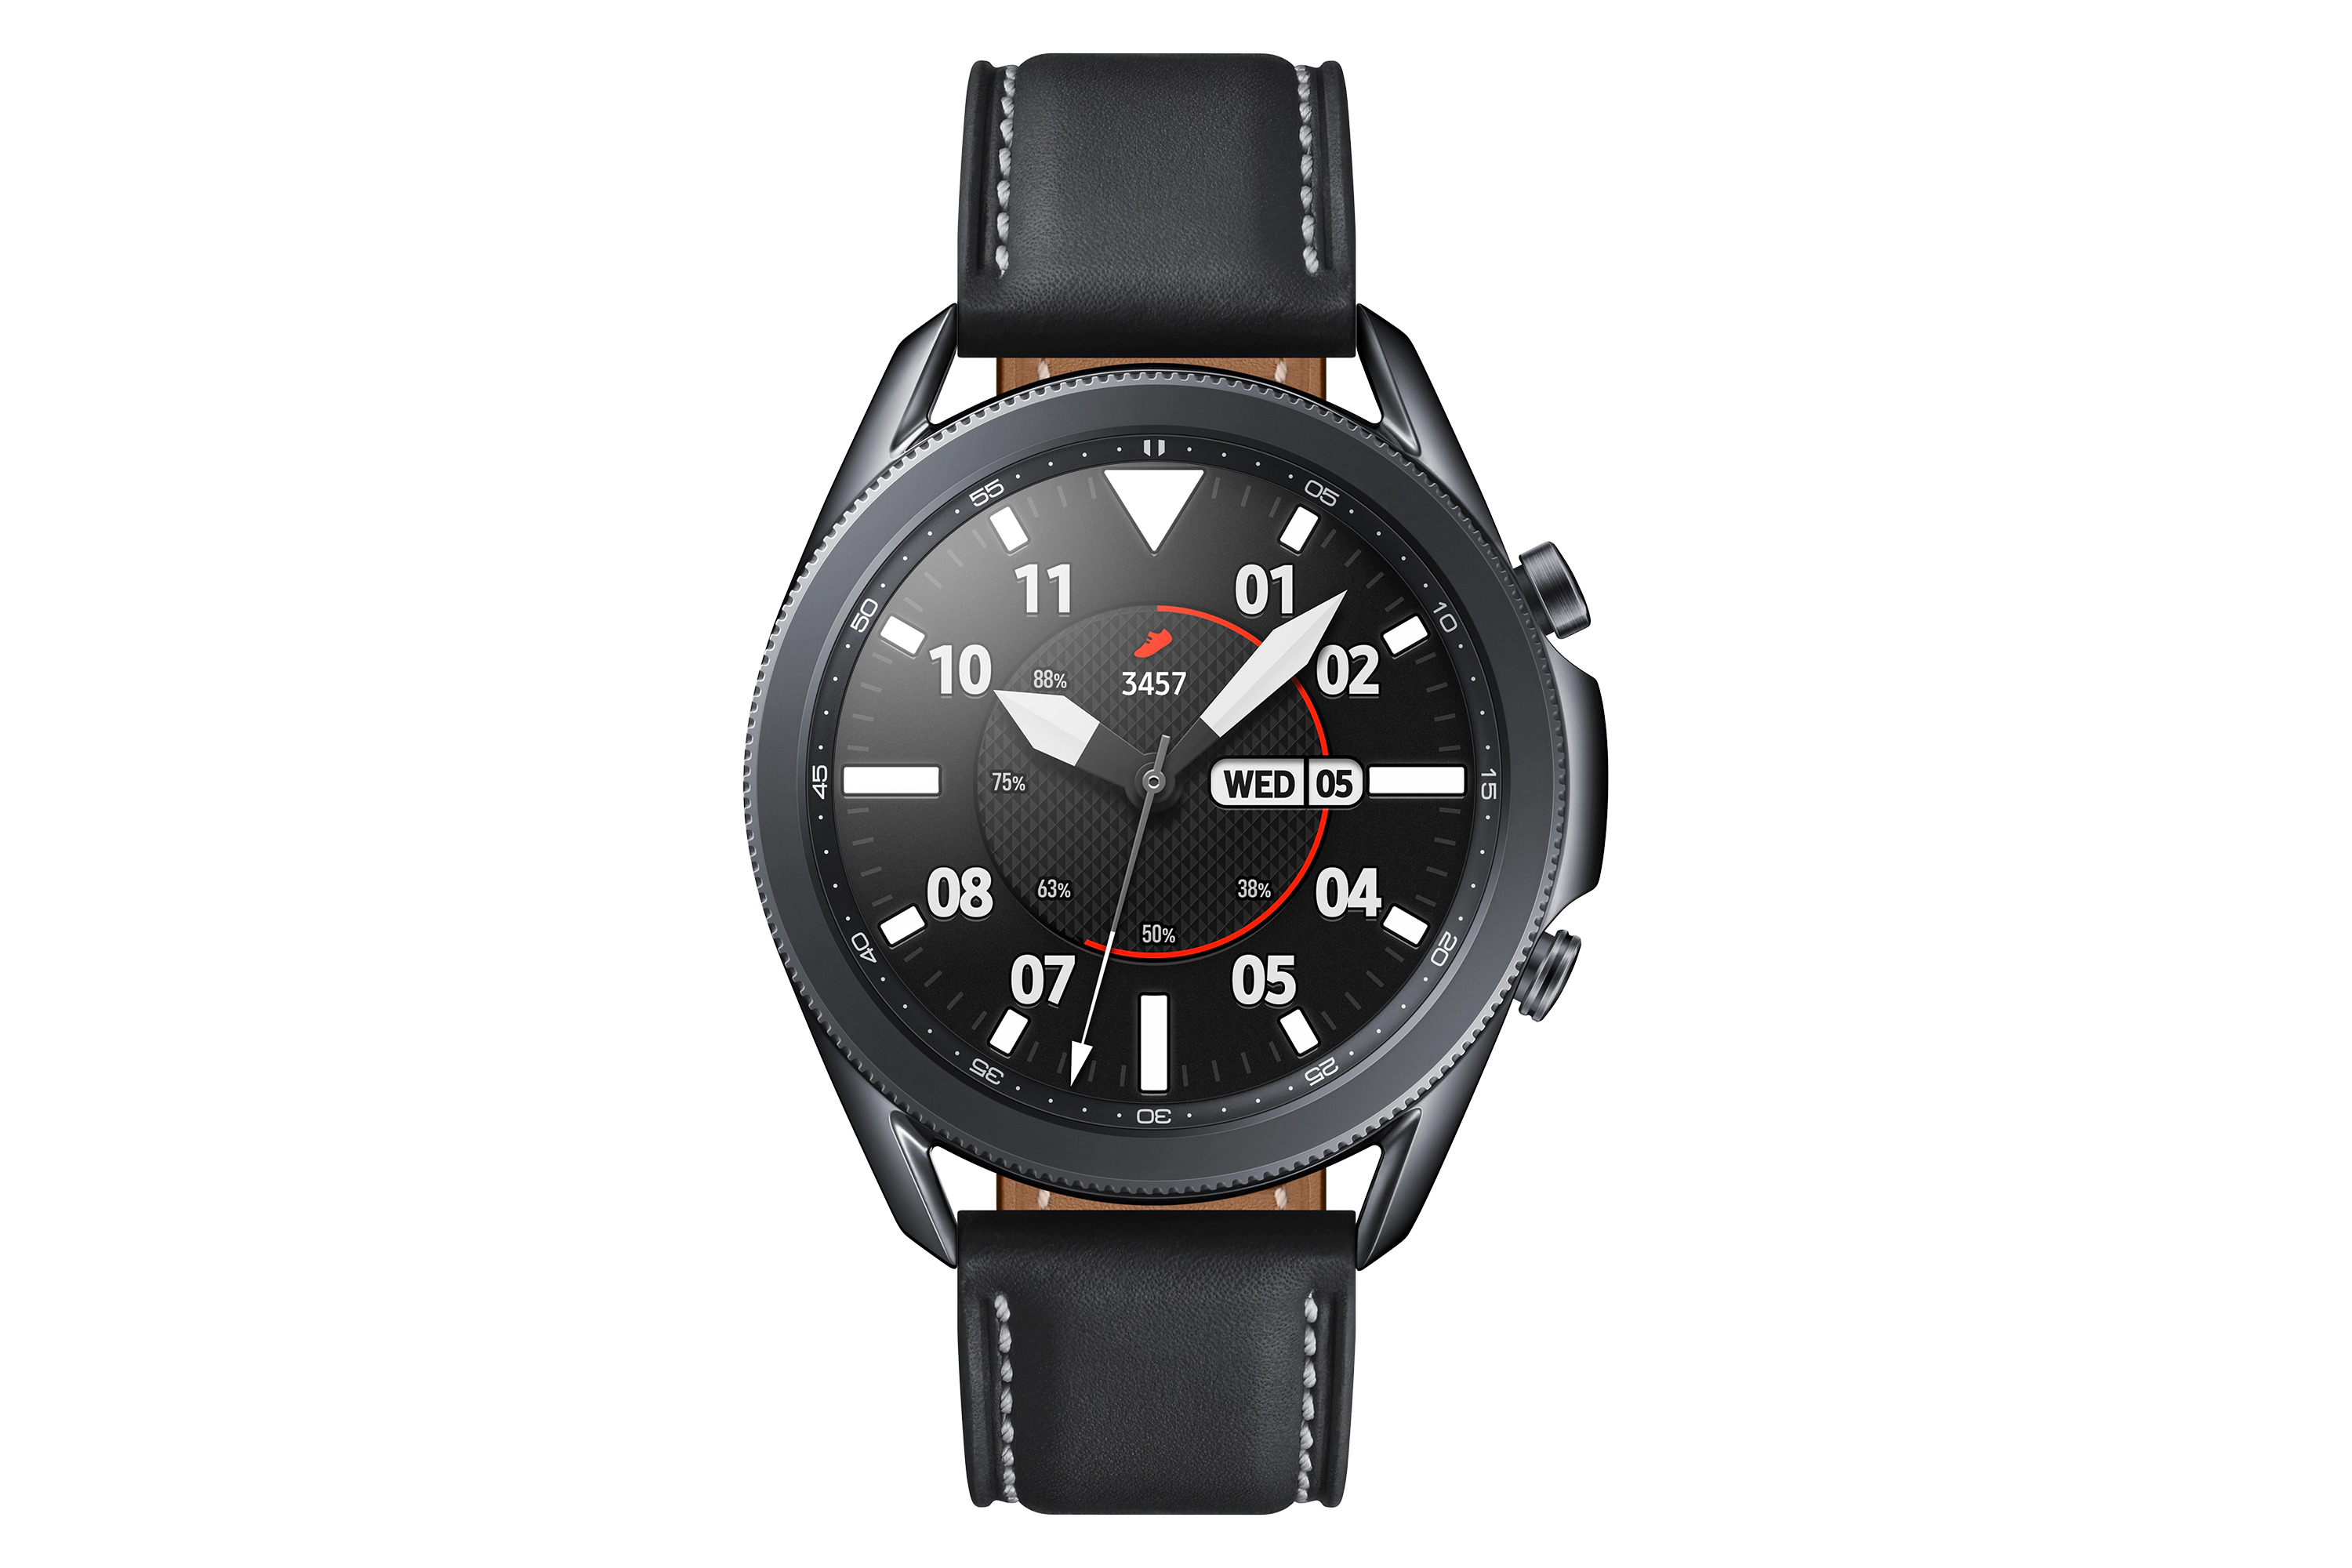 Best smartwatch: Samsung Galaxy Watch 3